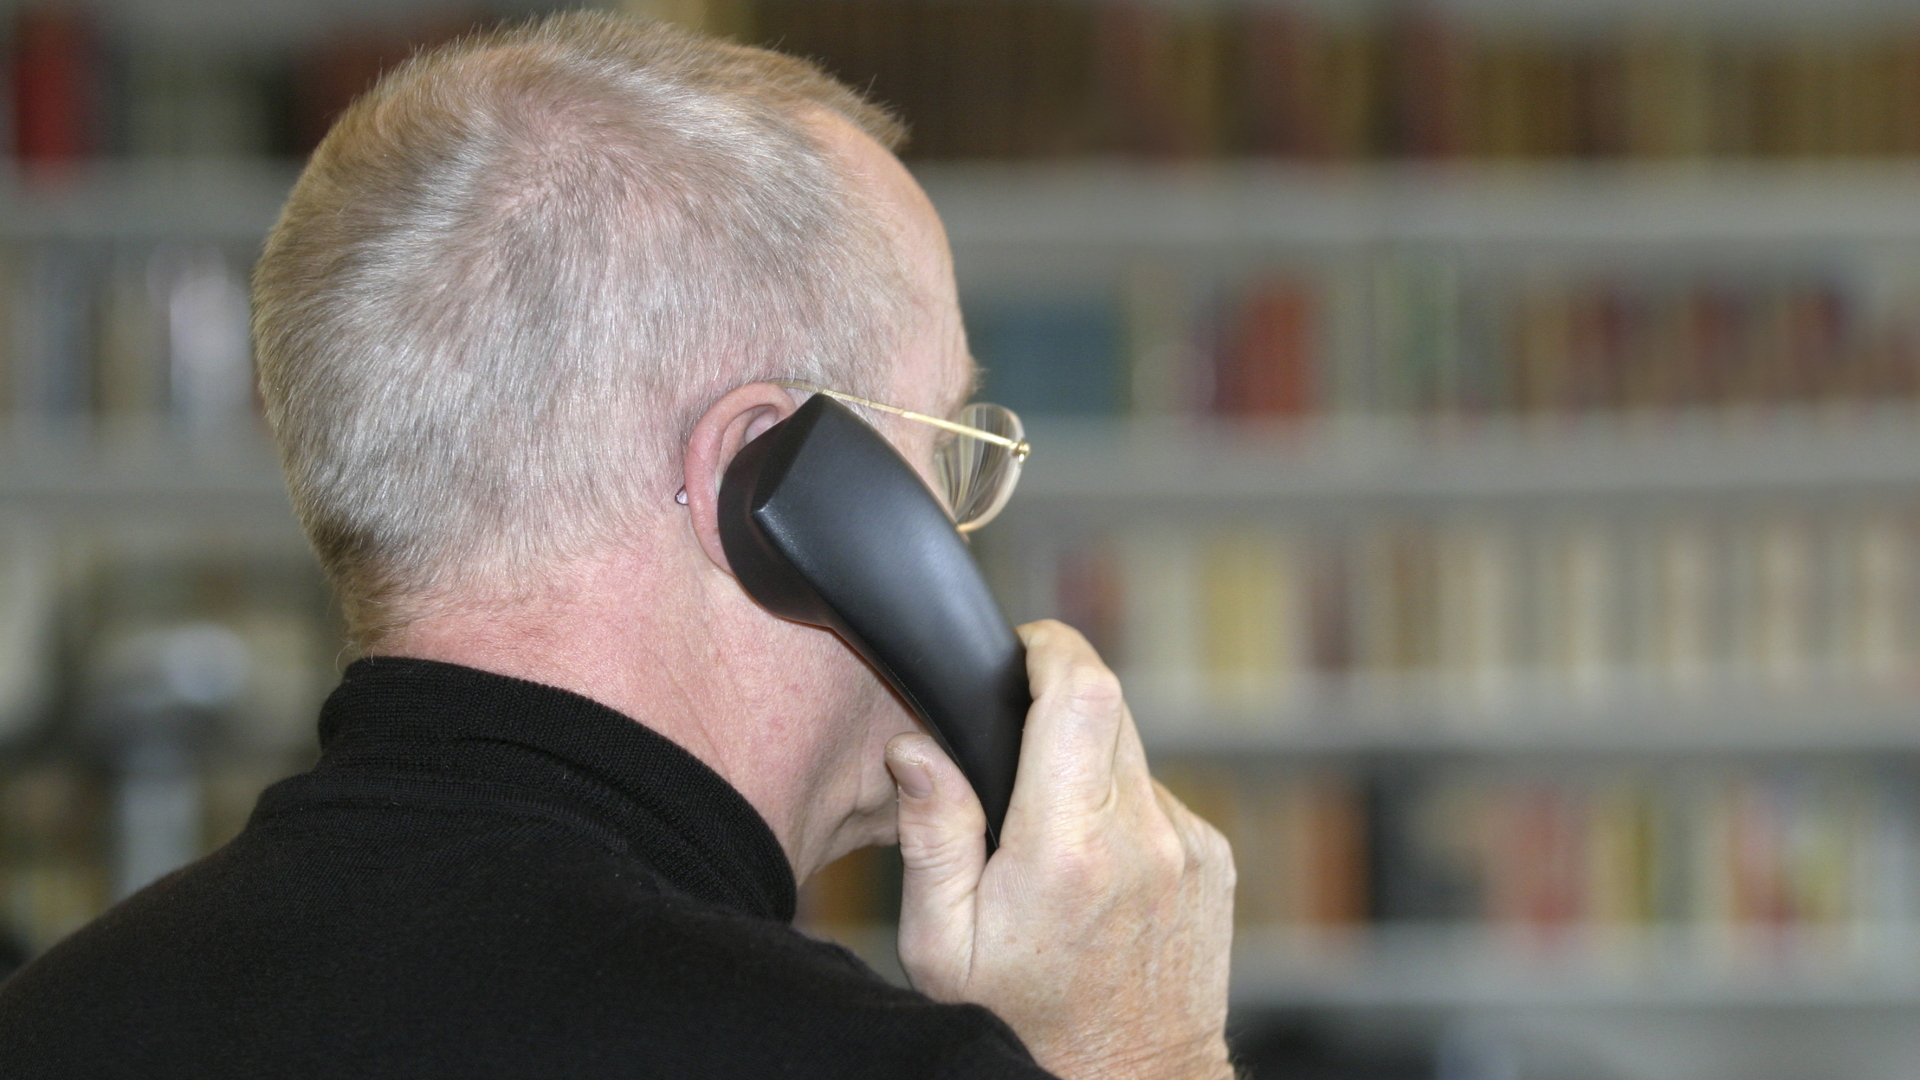 Ein älterer Mann beim Telefonieren | Bildquelle: ARD-aktuell